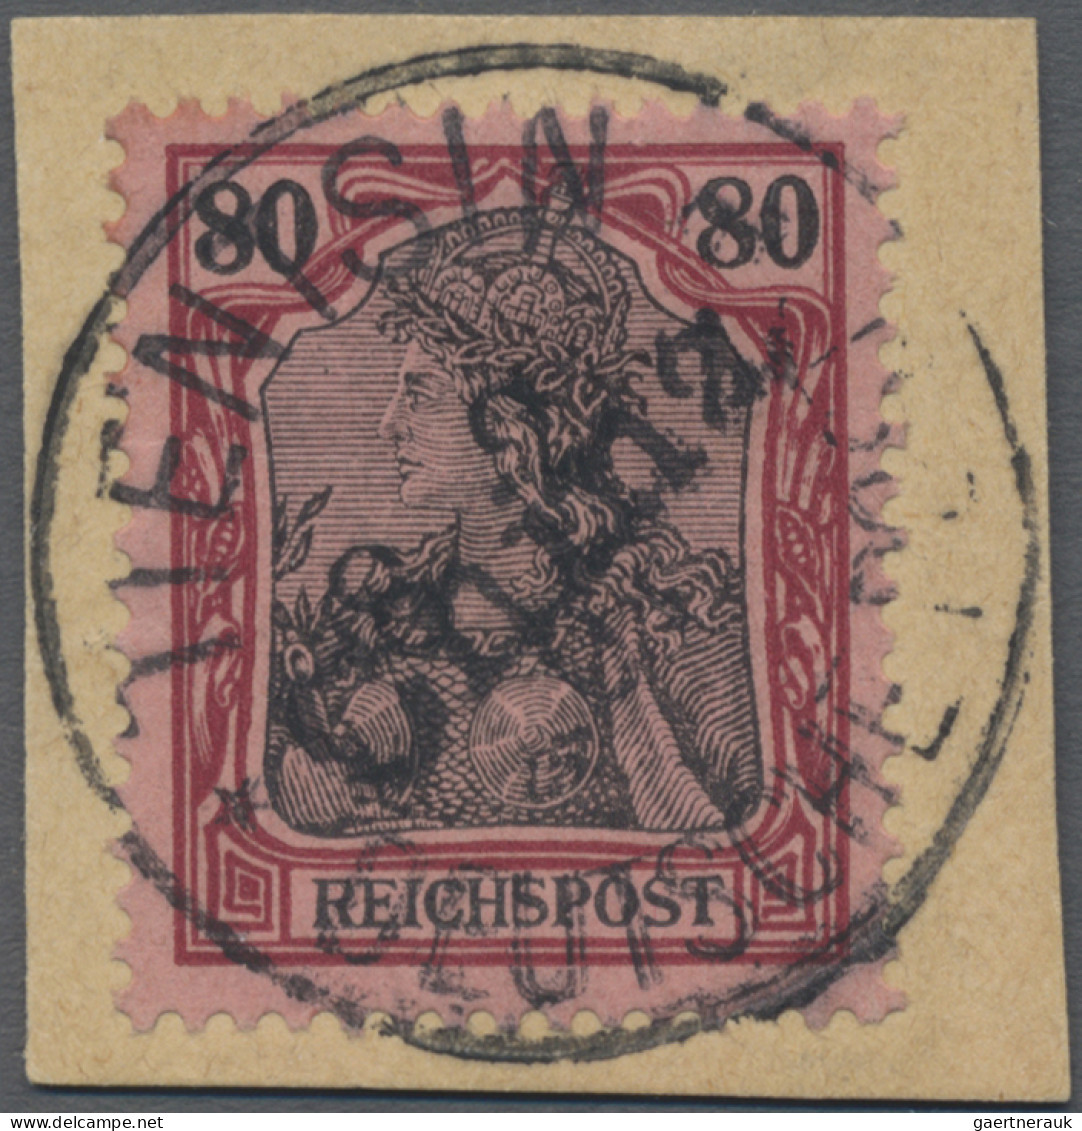 Deutsche Post In China: 1901, 80 Pf Germania Reichspost Mit Handstempelaufdruck, - Deutsche Post In China